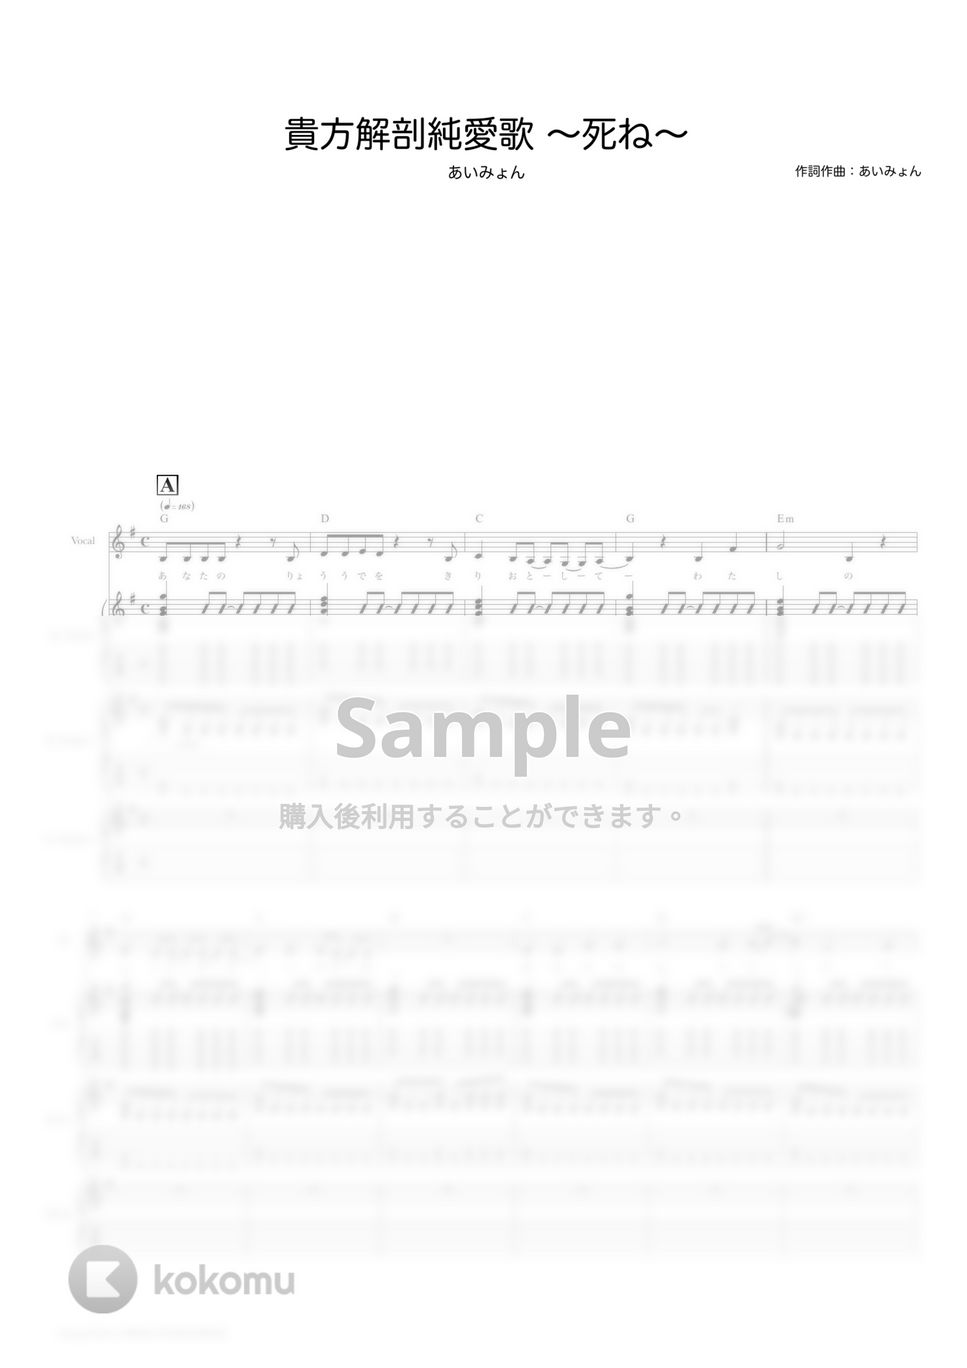 あいみょん - 貴方解剖純愛歌 〜死ね〜 (ギタースコア・歌詞・コード付き) by TRIAD GUITAR SCHOOL